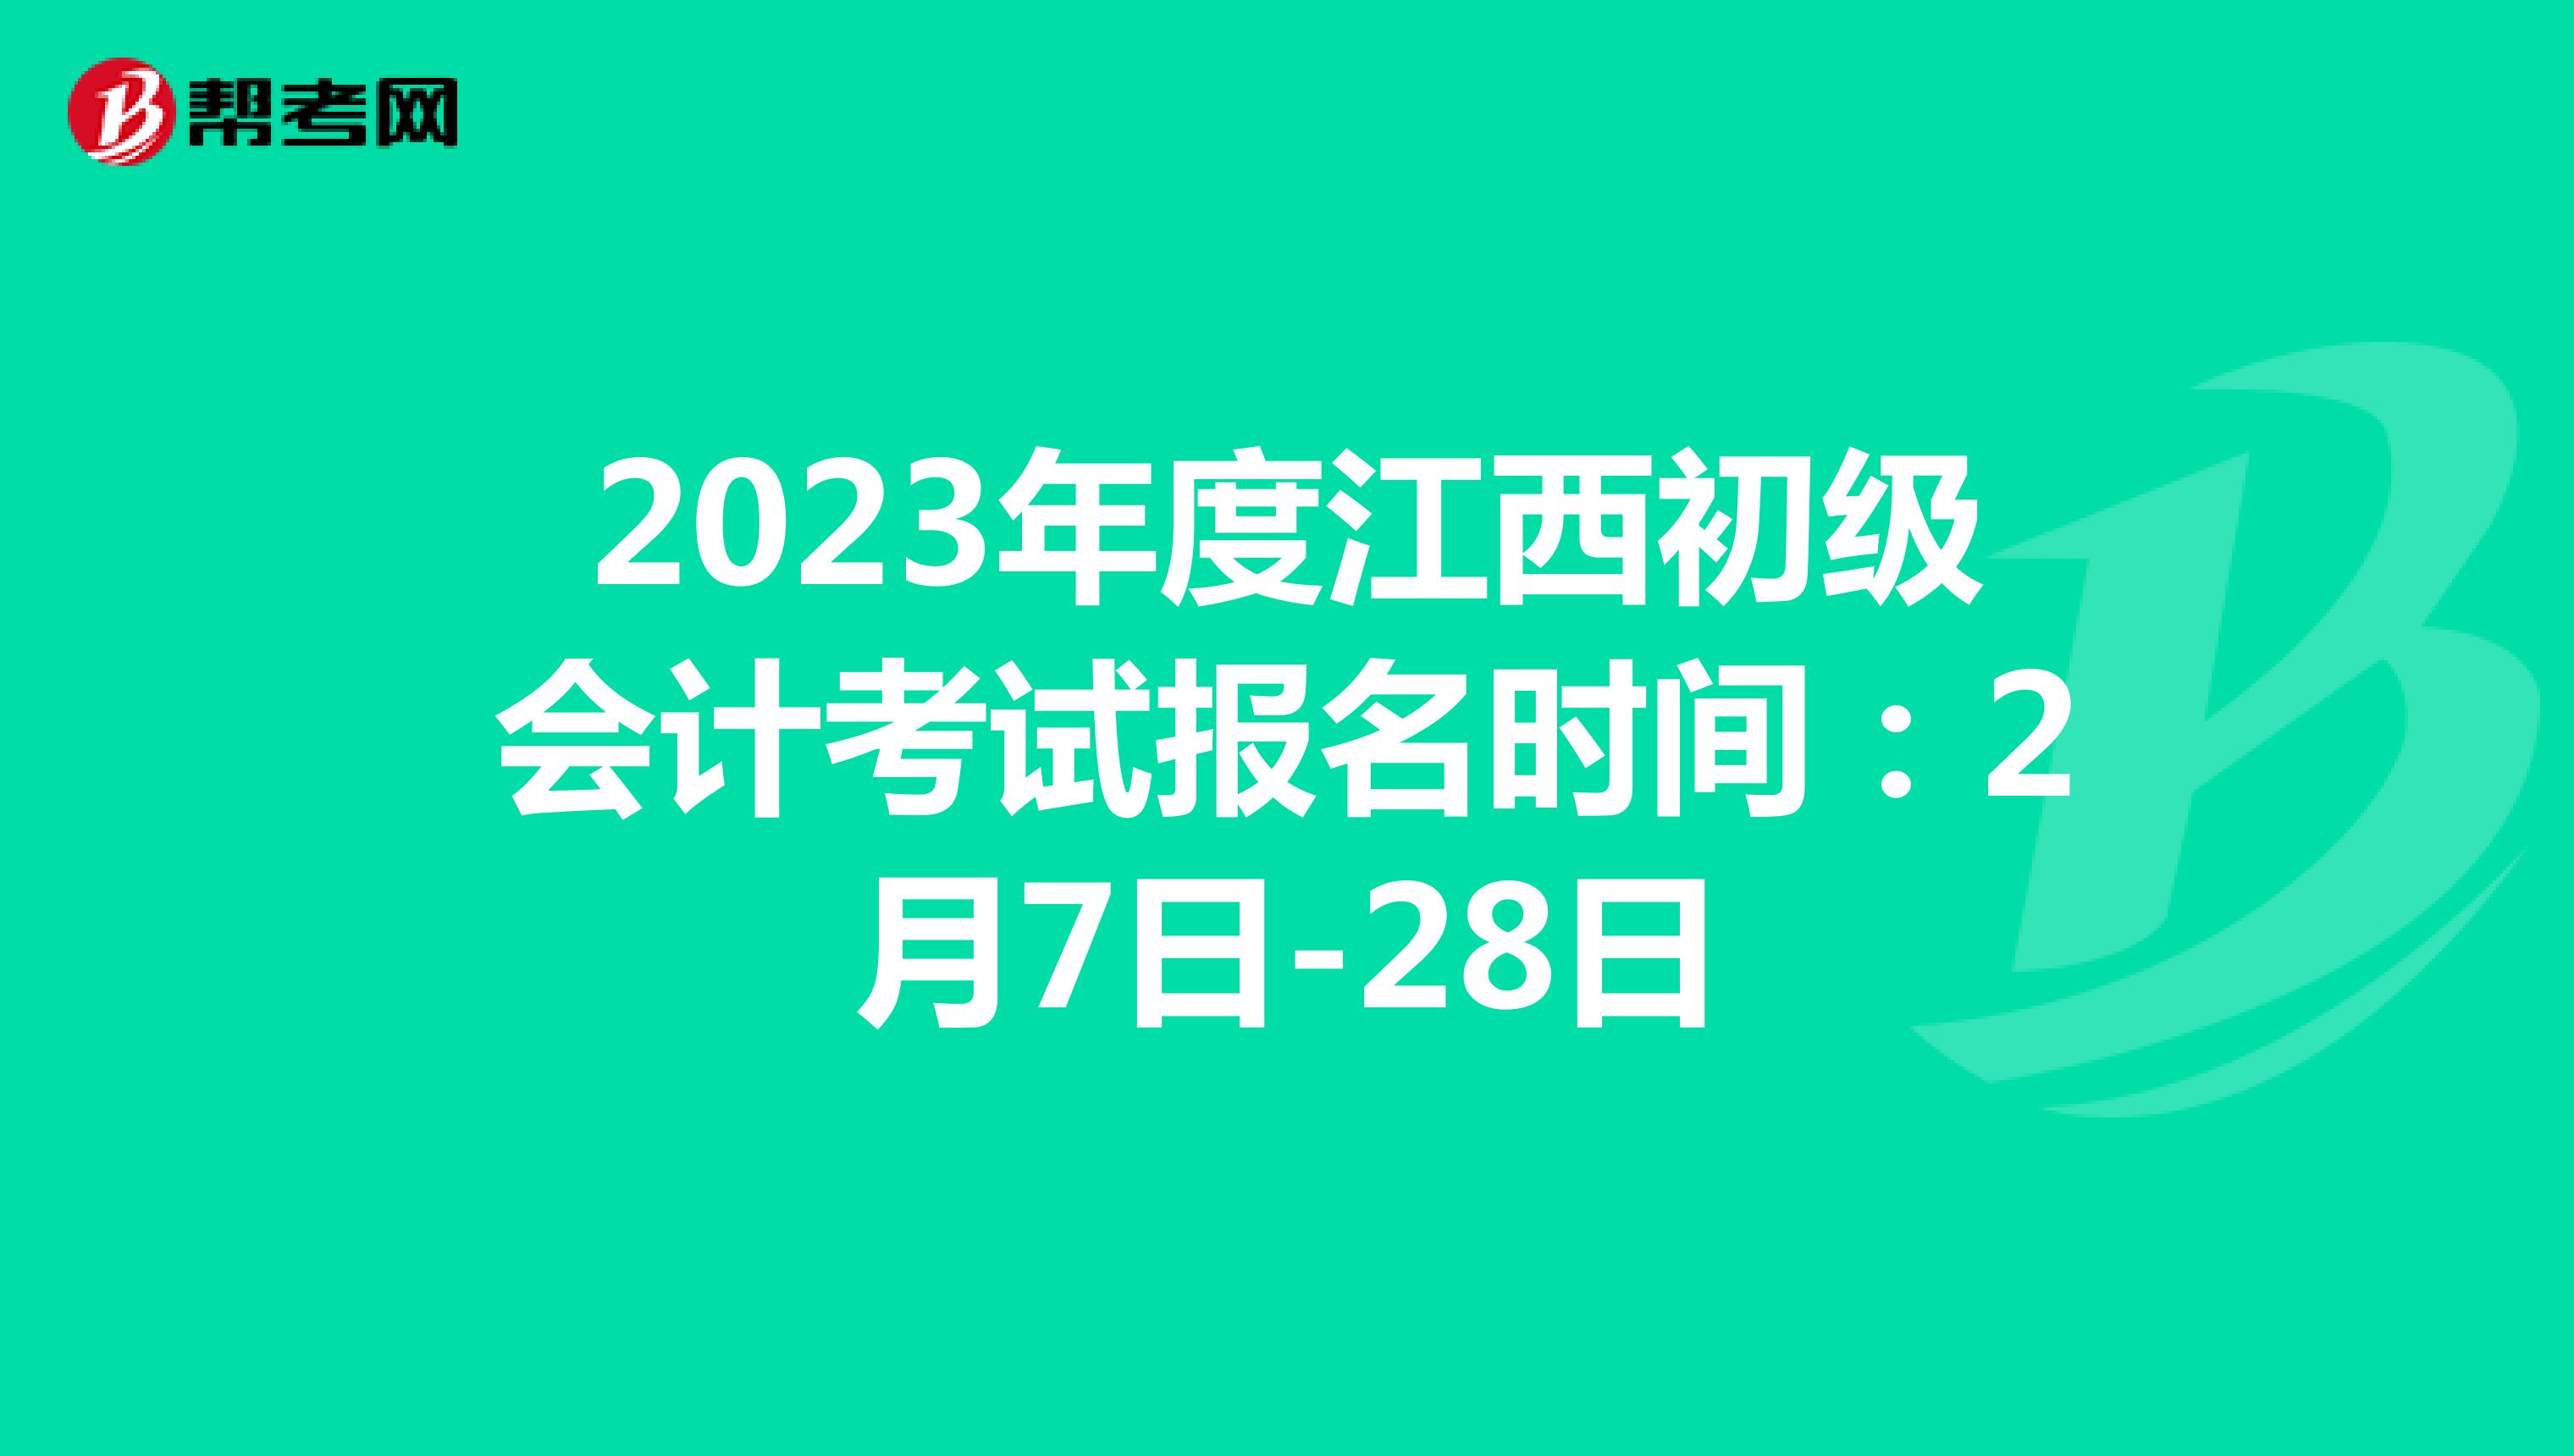 2023年度江西初级会计考试报名时间：2月7日-28日